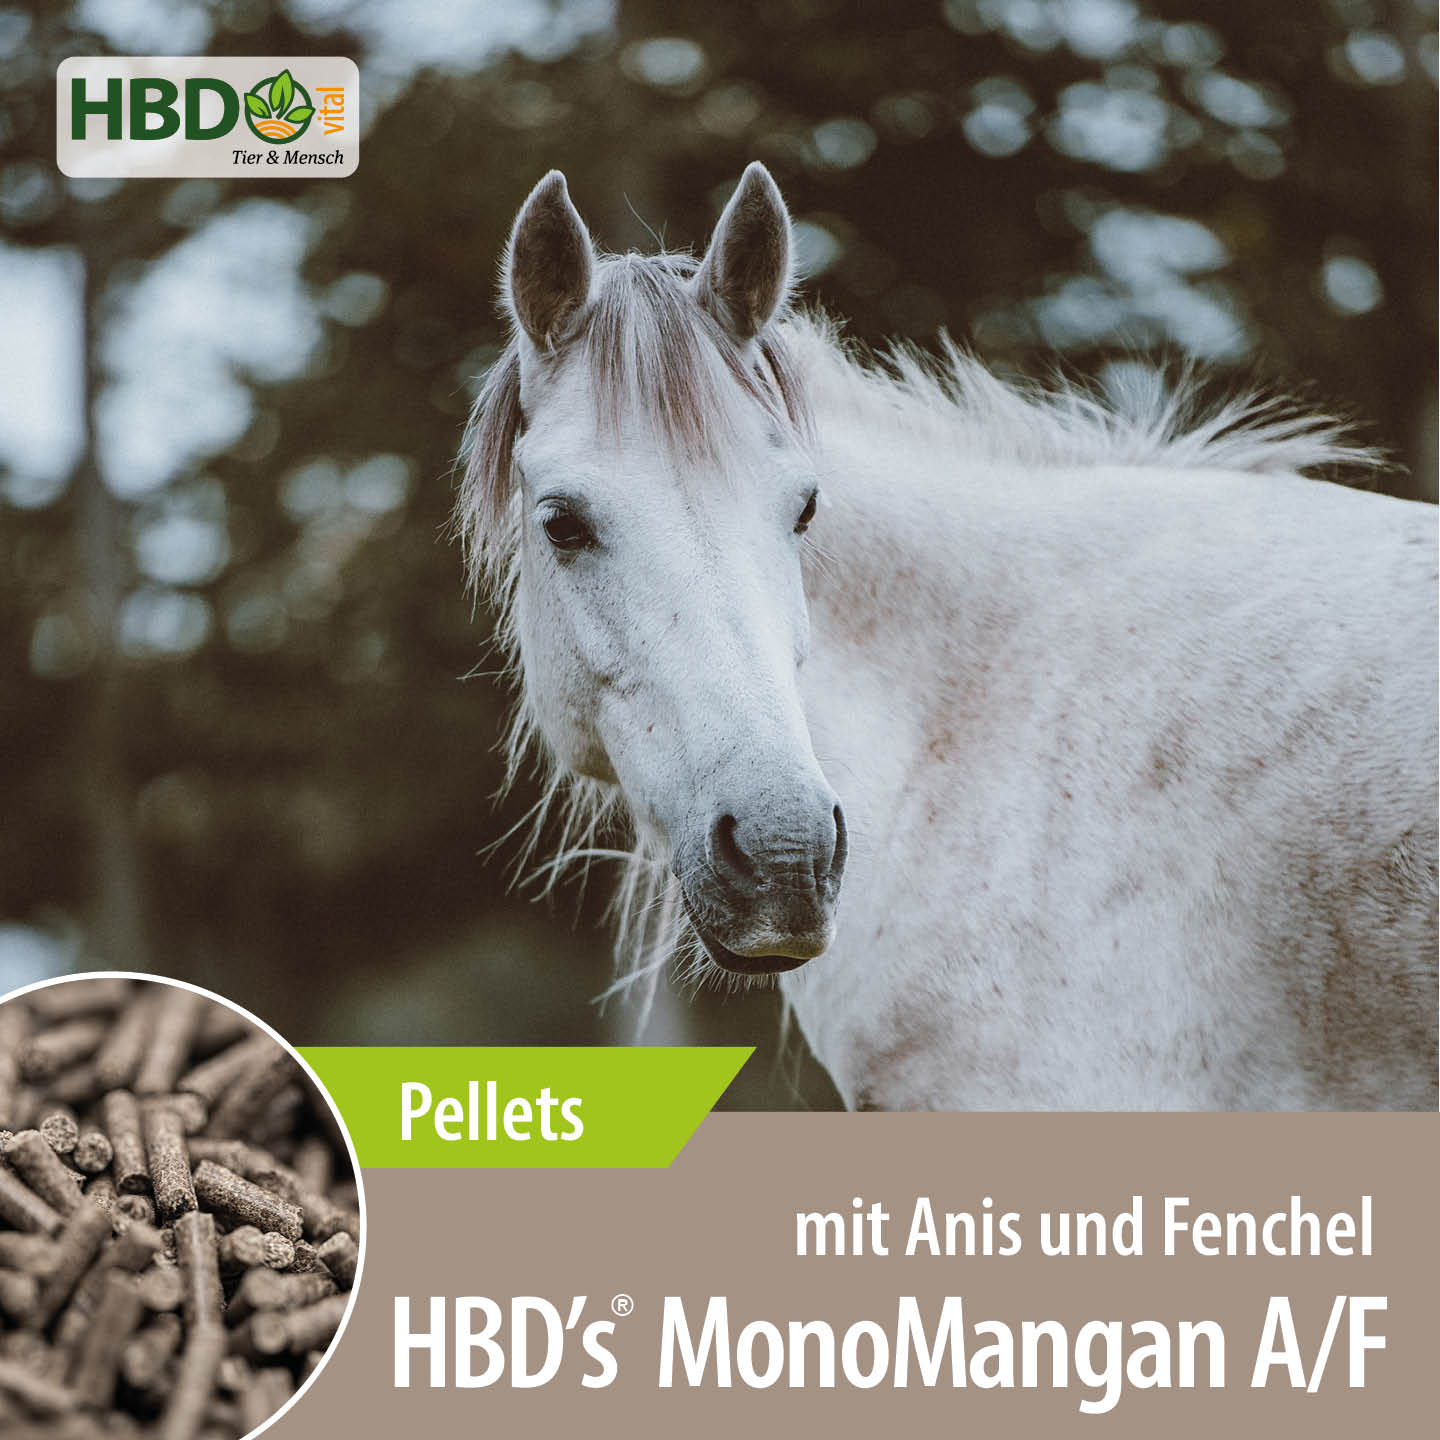 Shopbild für HBD’s MonoMangan A/F mit Anis und Fenchel - Das Bild zeigt den Produktnamen sowie den Hinweis, dass es sich um Pellets handelt. Ein weißes Pferd ist zu sehen.